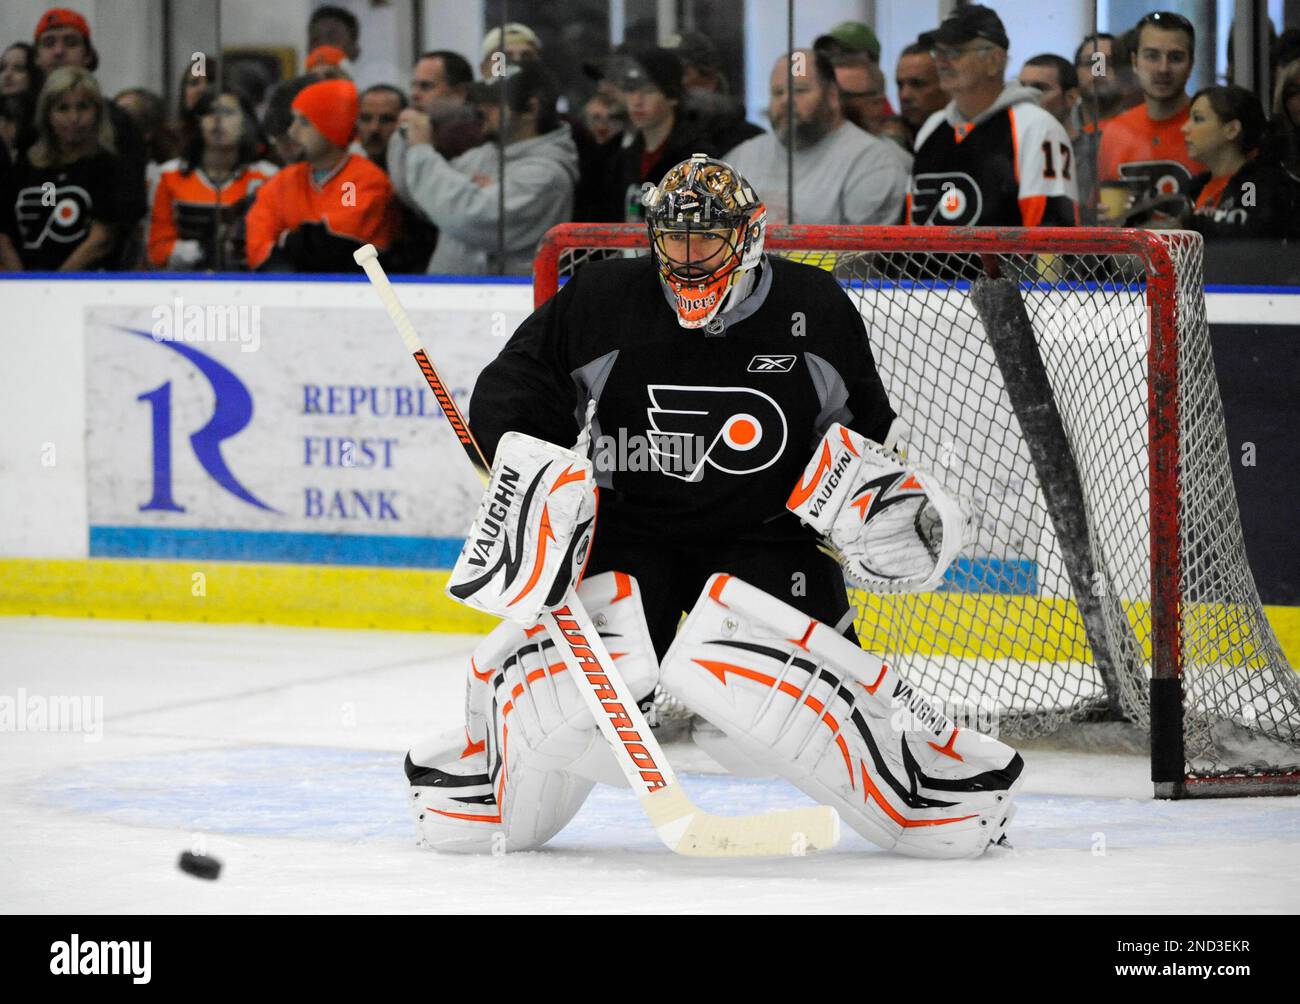 Flyers' goalie Boucher looking forward to a showdown in Boston